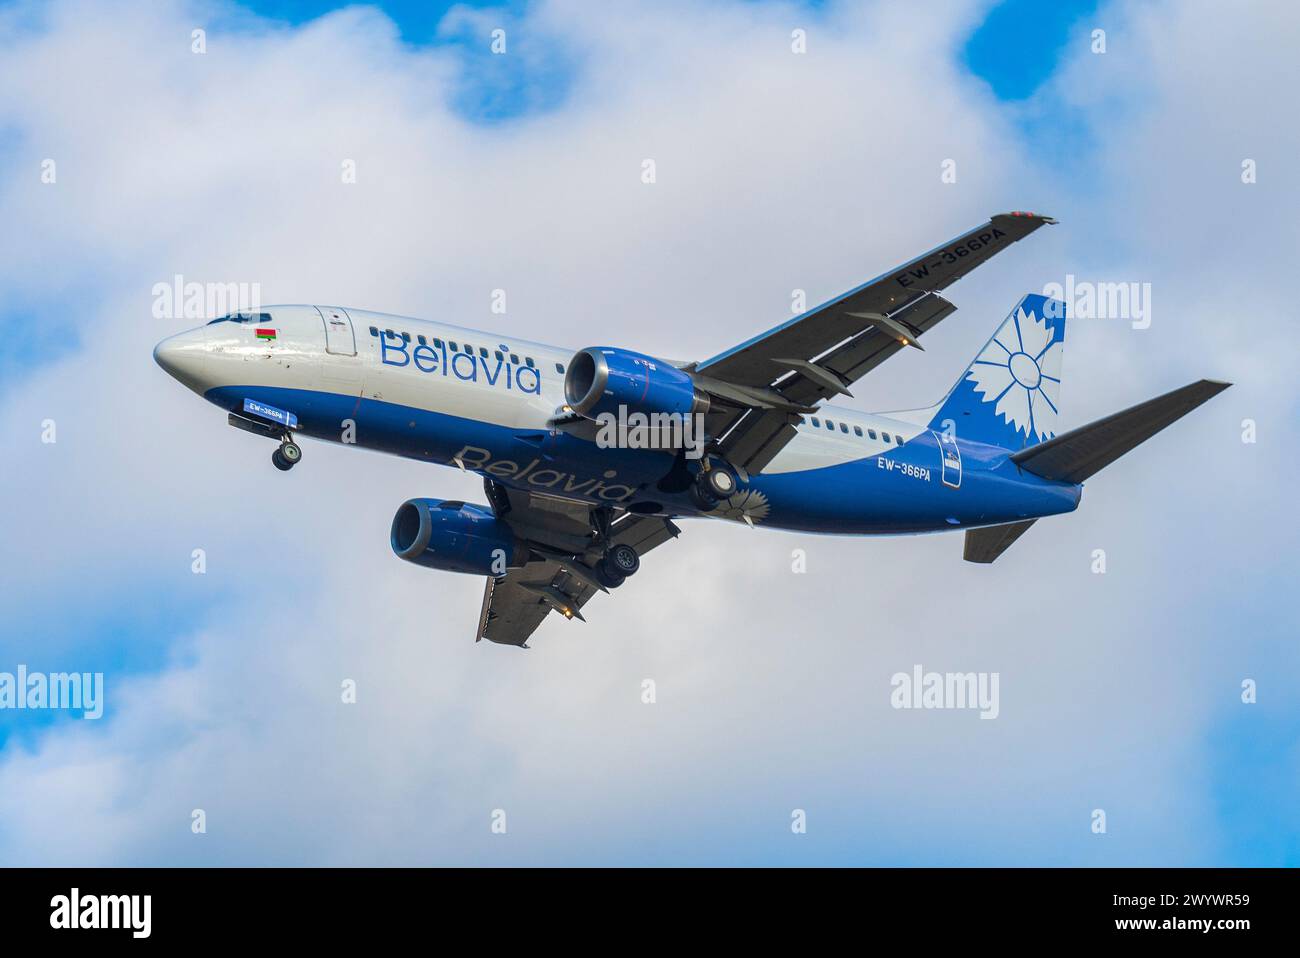 SANKT PETERSBURG, RUSSLAND - OKTOBER 2018: Boeing 737-300 (EW-366PA) von Belavia Airlines auf dem Gleitweg bei bewölktem Himmel Stockfoto